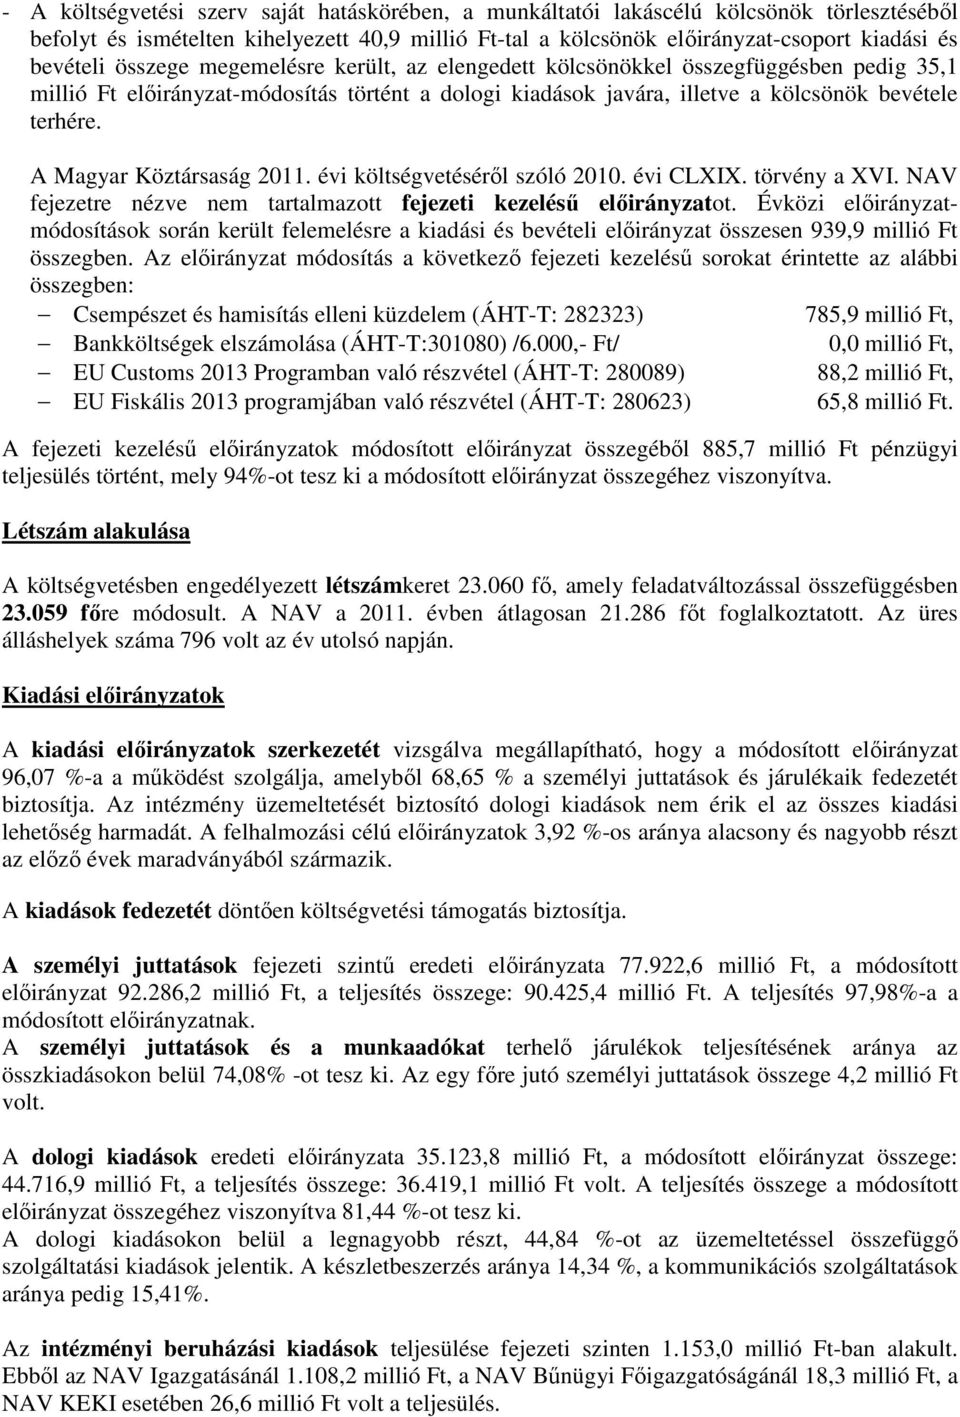 A Magyar Köztársaság 2011. évi költségvetéséről szóló 2010. évi CLXIX. törvény a XVI. NAV fejezetre nézve nem tartalmazott fejezeti kezelésű előirányzatot.